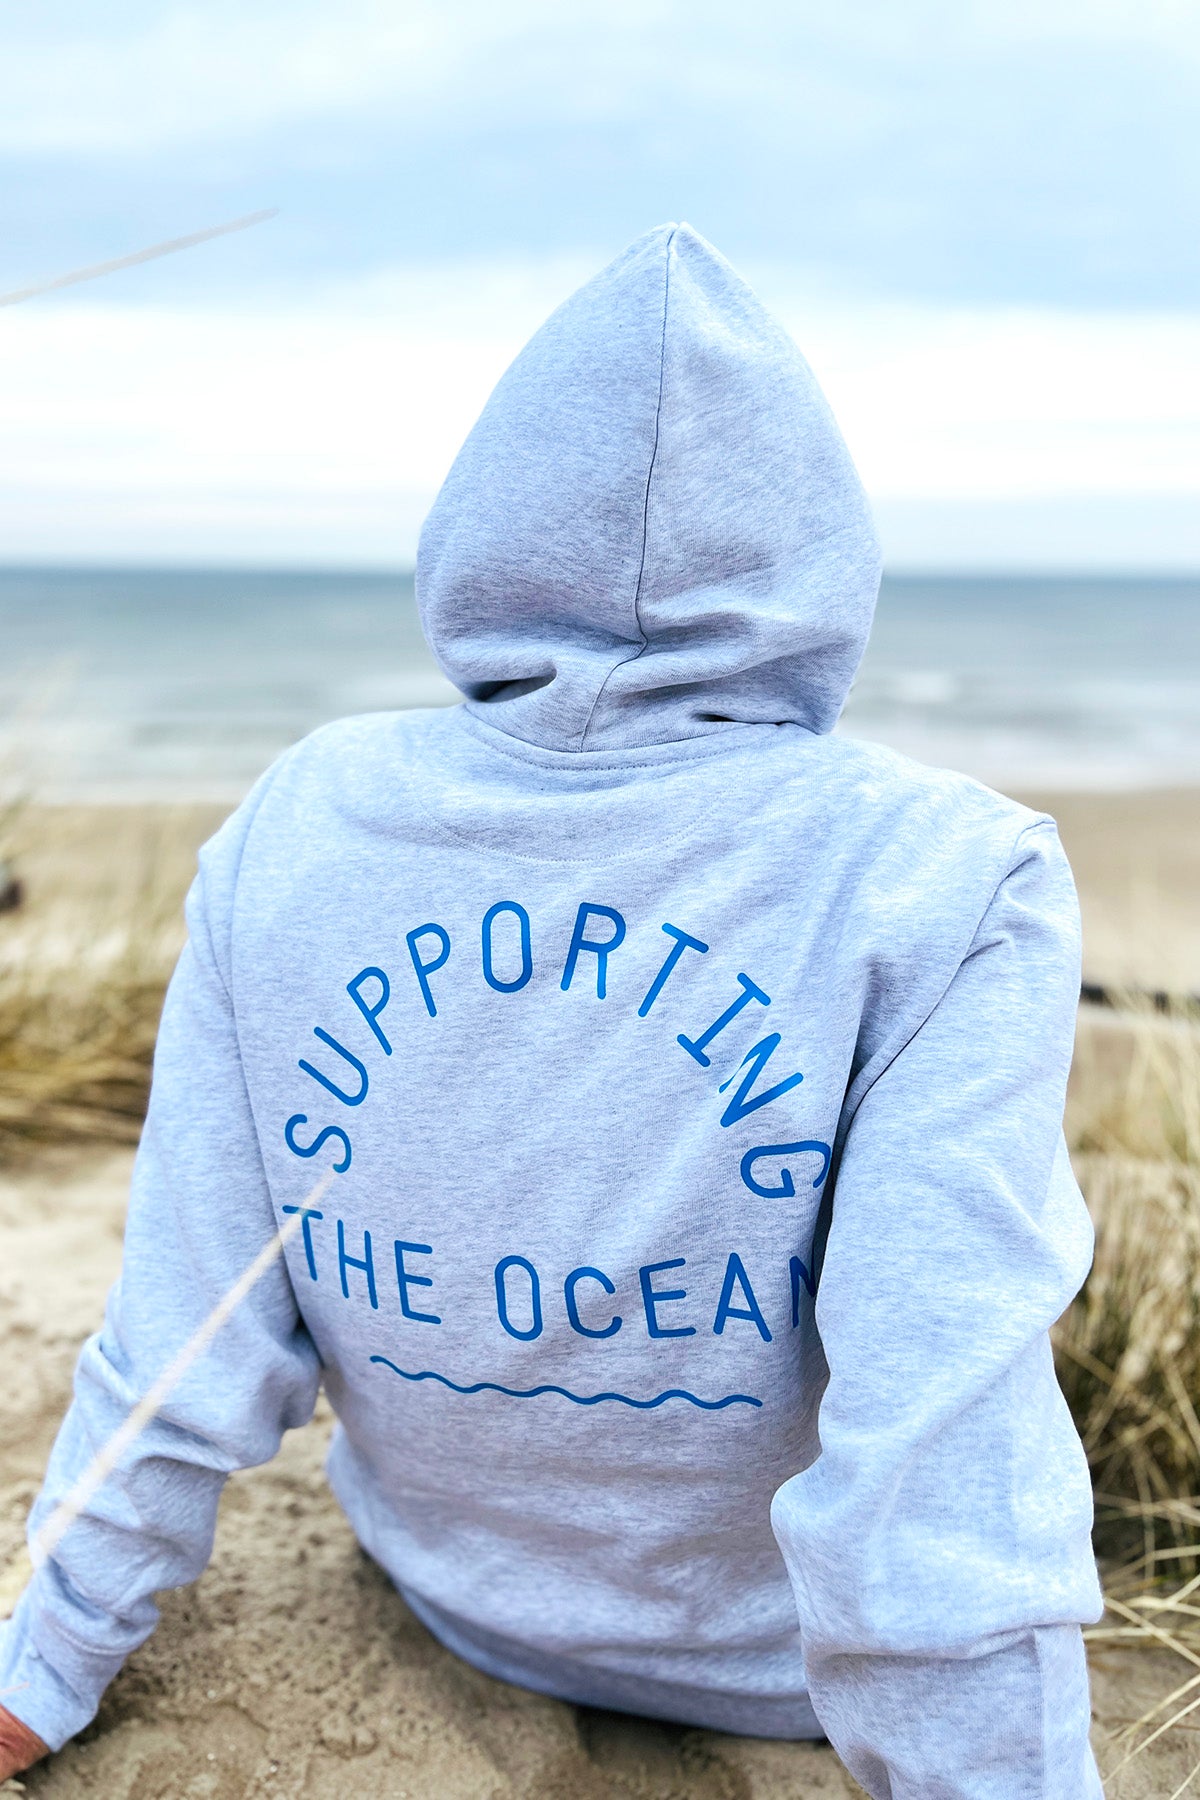 Hoodie "Supporting the Ocean"